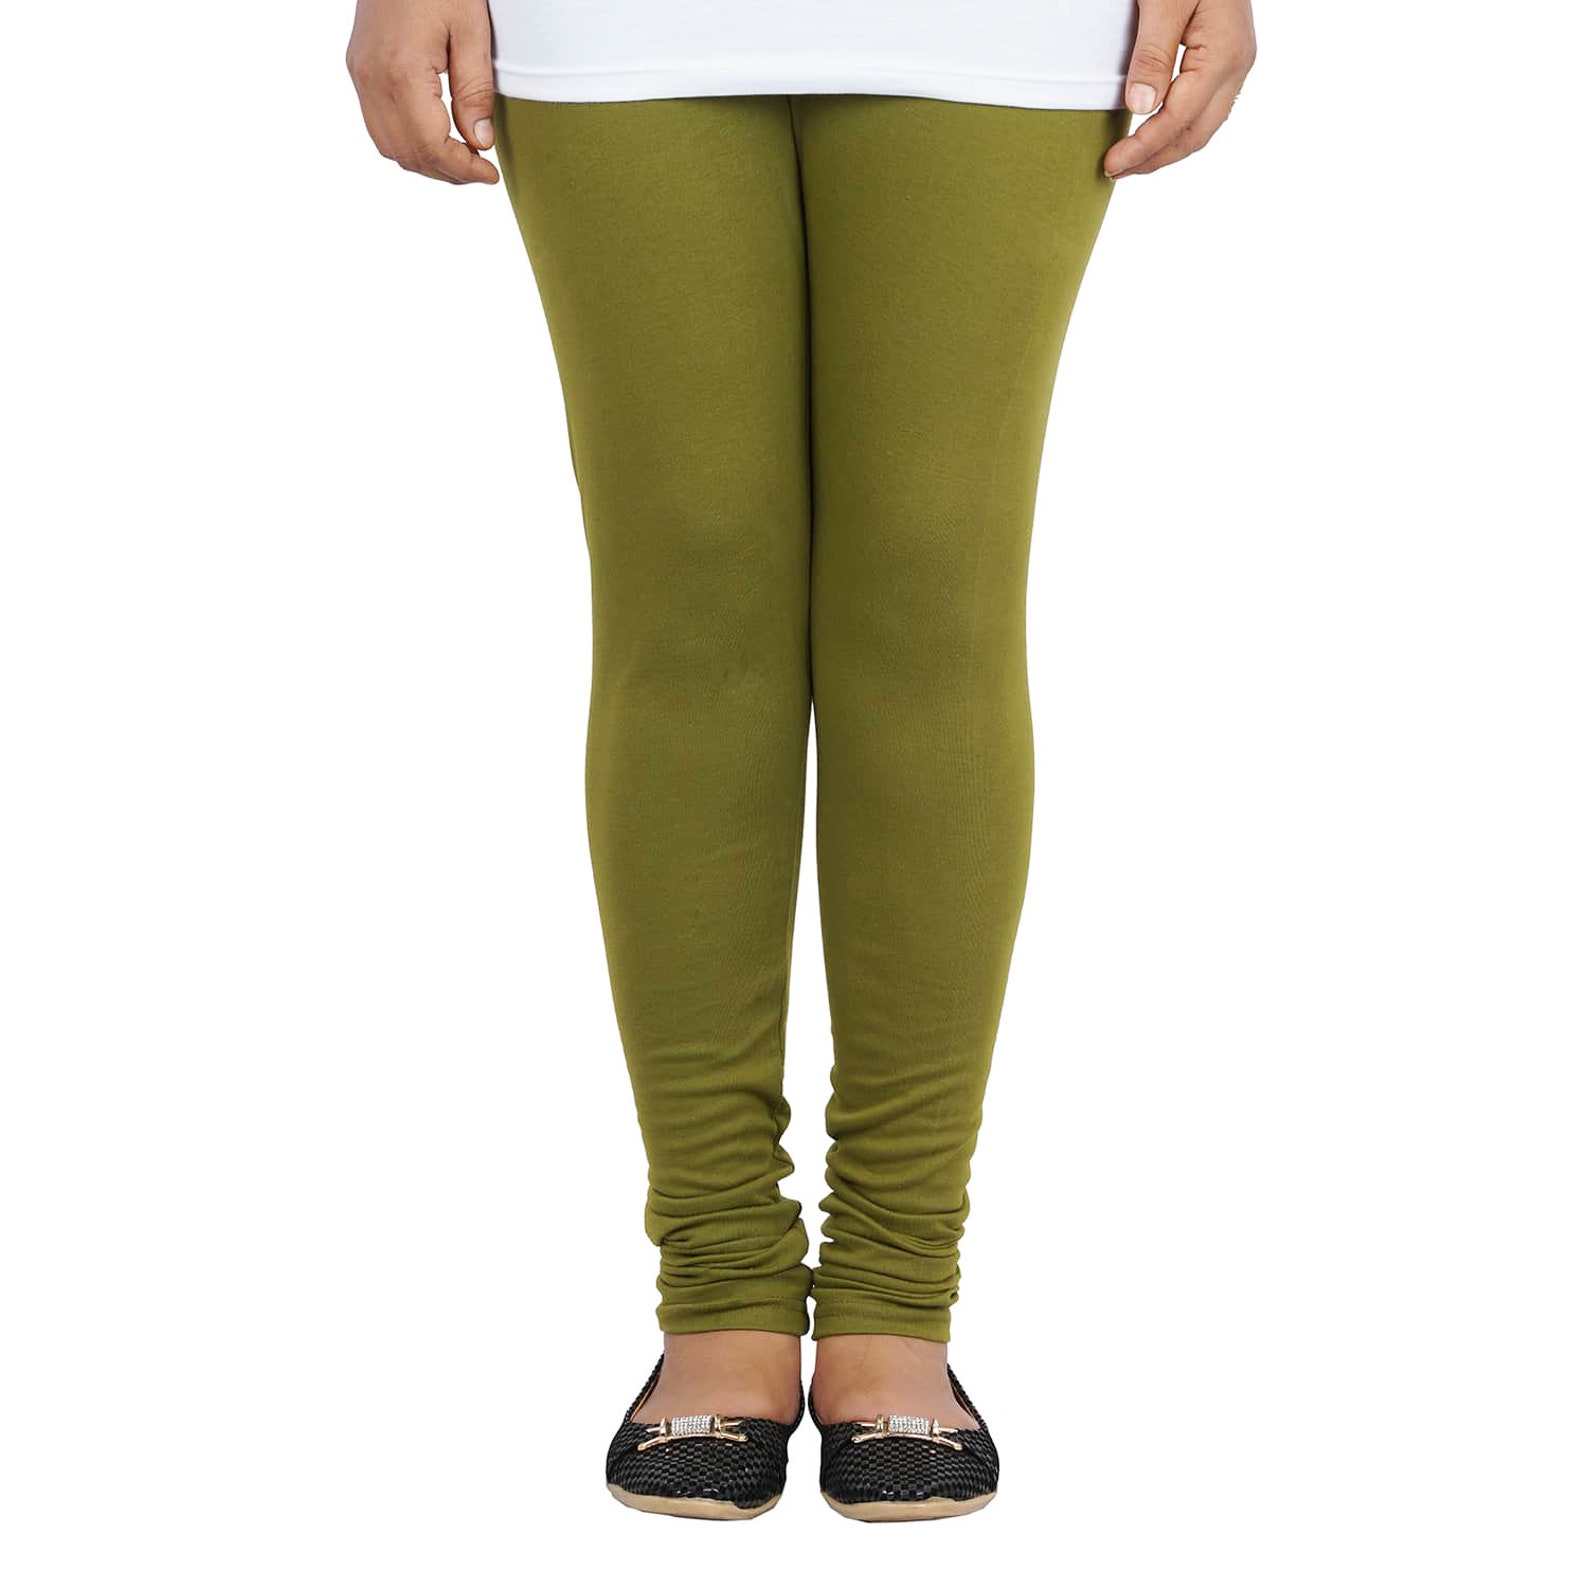 Olive green color handmade Leggings women's wear sport | Etsy